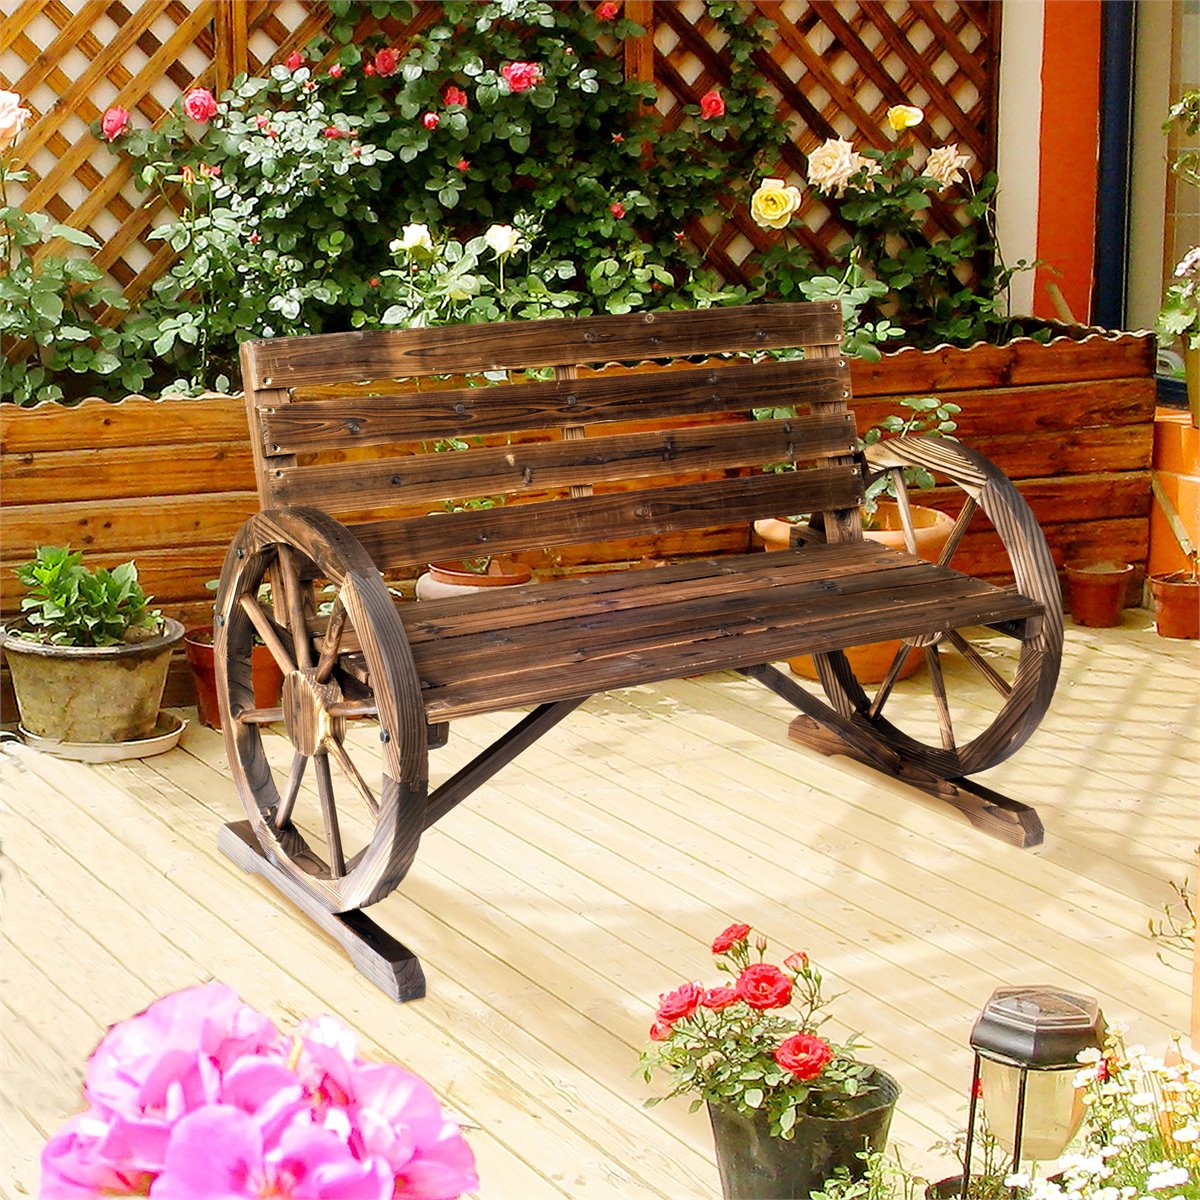 Banco de jardín, banco de jardín de madera con respaldo y reposabrazos,  banco de patio para 2 personas, resistente a la intemperie, diseño rústico  de